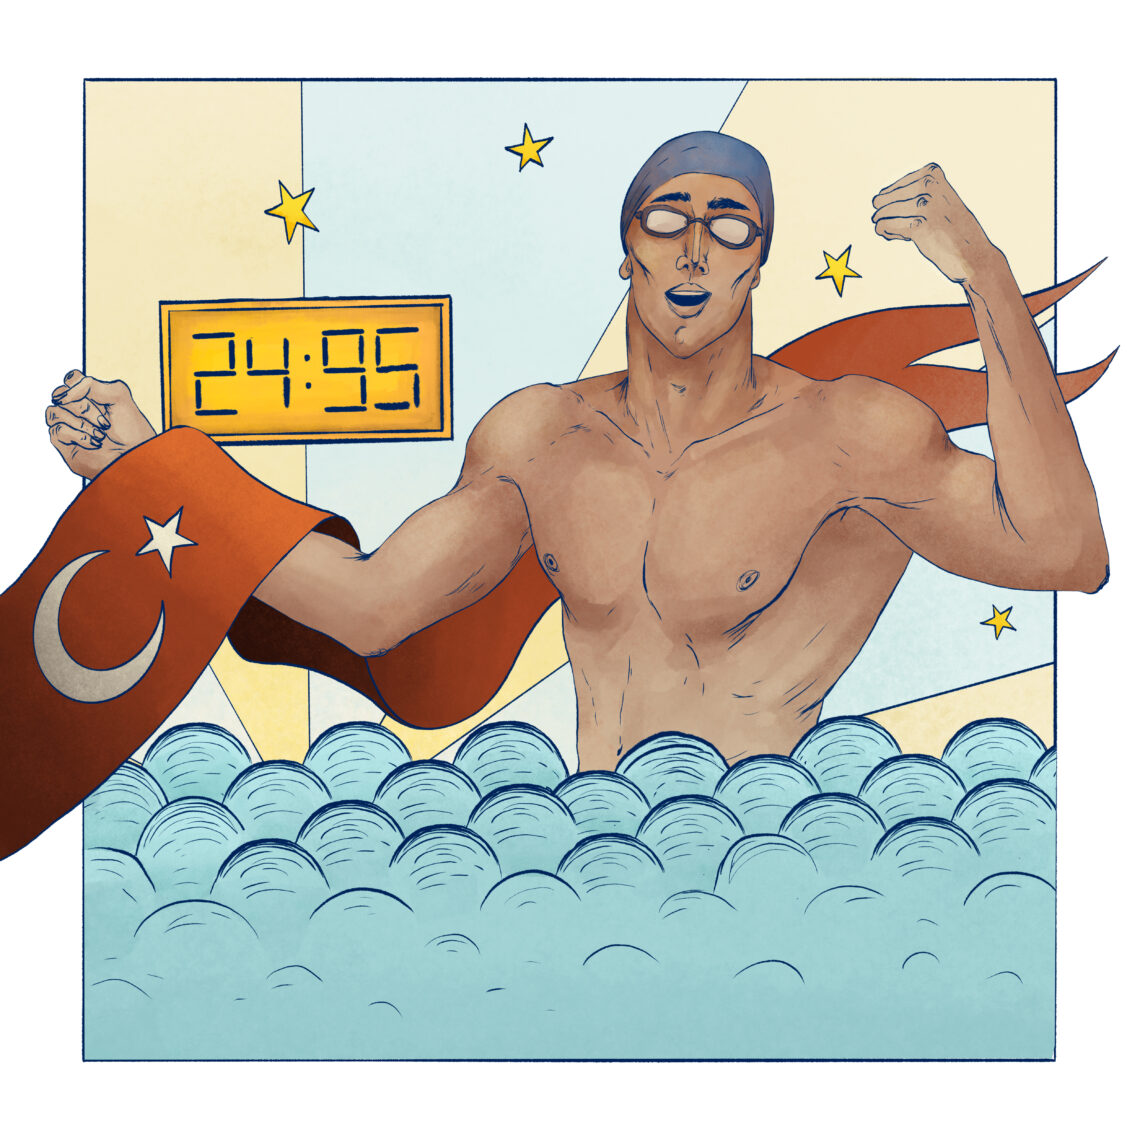 Türk ilaç sektörünün 21 yıldır kesintisiz lideri Abdi İbrahim, ana sponsoru olduğu milli yüzücü Emre Sakcı’nın 24.95 saniyelik dünya rekorunu, NFT koleksiyonu ile ölümsüzleştiriyor. Rekortmen yüzücü Emre Sakcı’nın hayatındaki kilometre taşlarından ilham alınarak hazırlanan ‘24 by Emre Sakcı’ koleksiyonundan elde edilecek gelir, ilk sene Kanserli Çocuklara Umut Vakfı’na (KAÇUV), sonraki senelerde ise Abdi İbrahim Vakfı’na bağışlanacak.